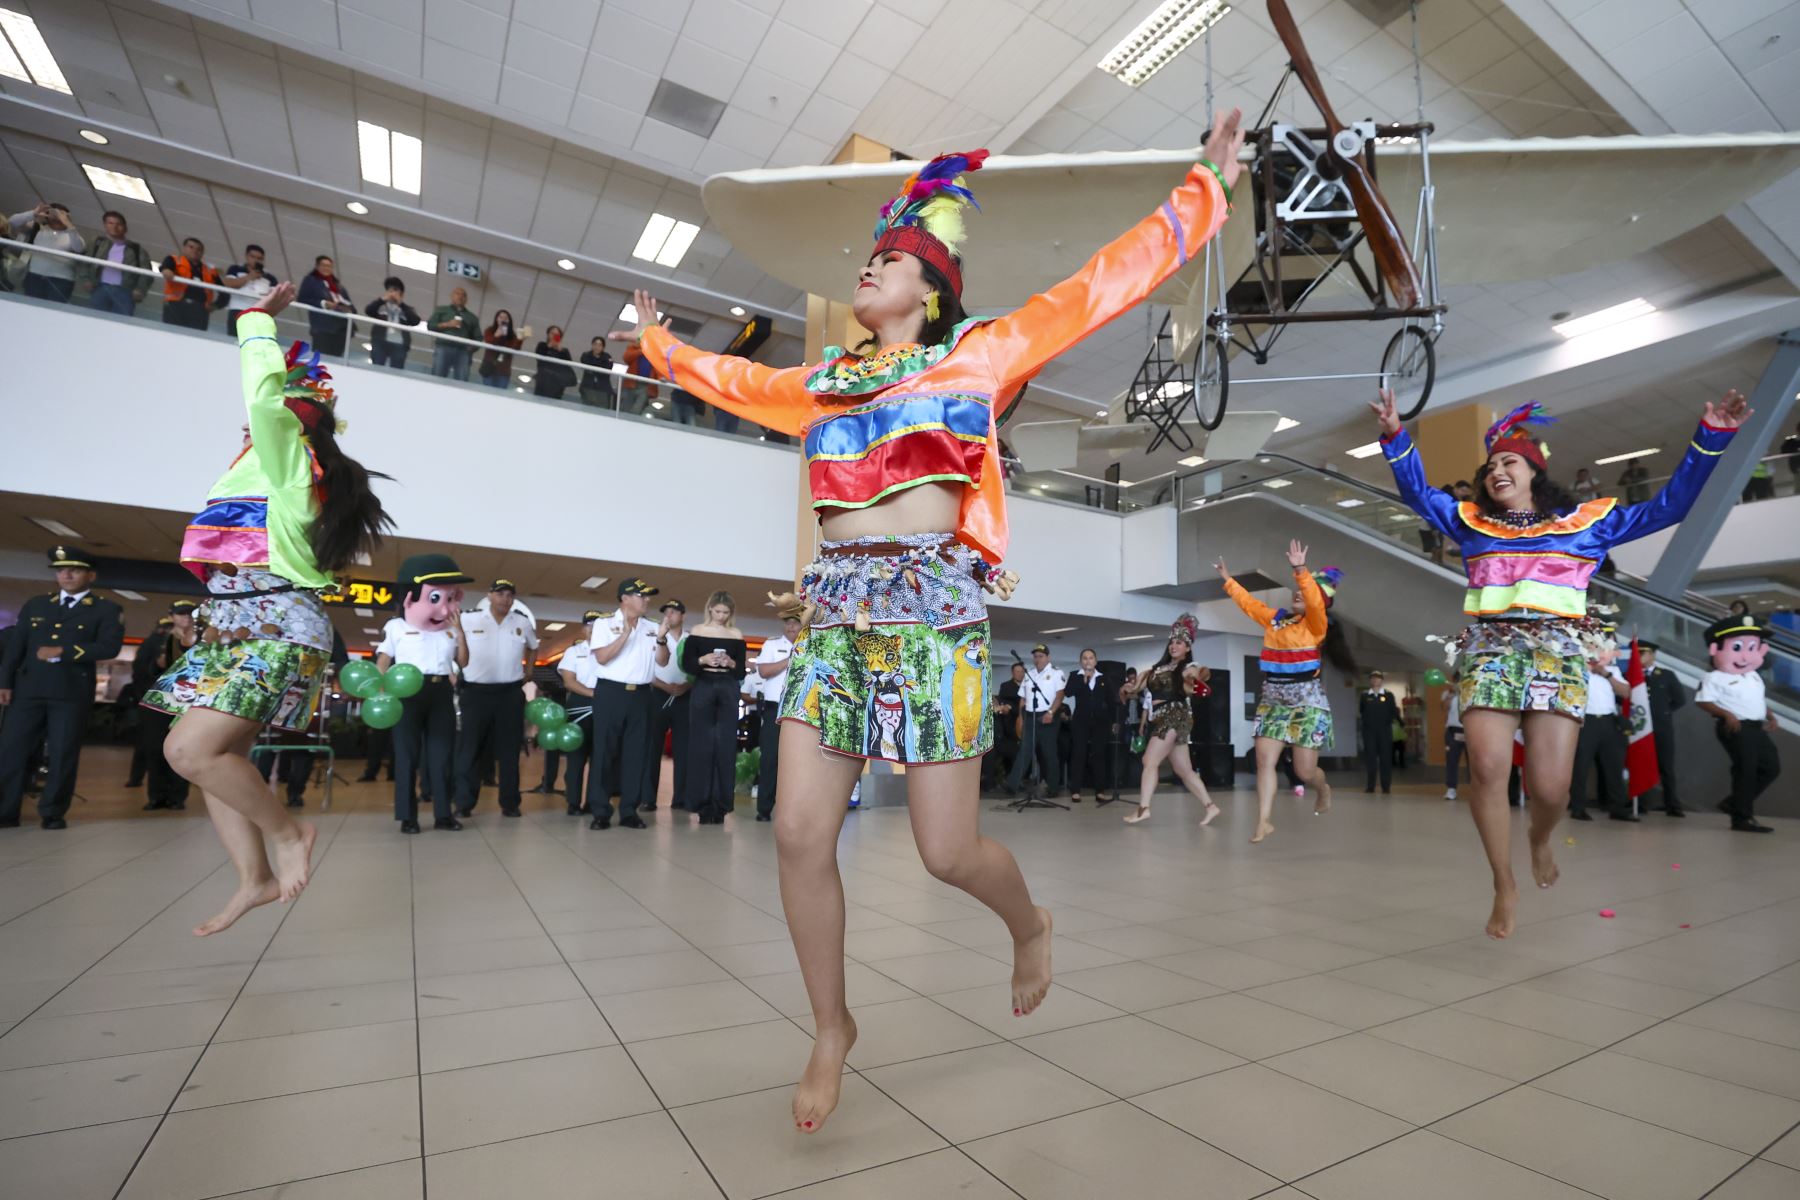 La danza de la Anaconda, baile típico de la selva peruana, deleitó a los turistas nacionales y extranjeros en el marco del Día Mundial del Turismo a través de la banda de música y bailarines de la Policía Nacional.

Foto: ANDINA/Juan Carlos Guzmán Negrini